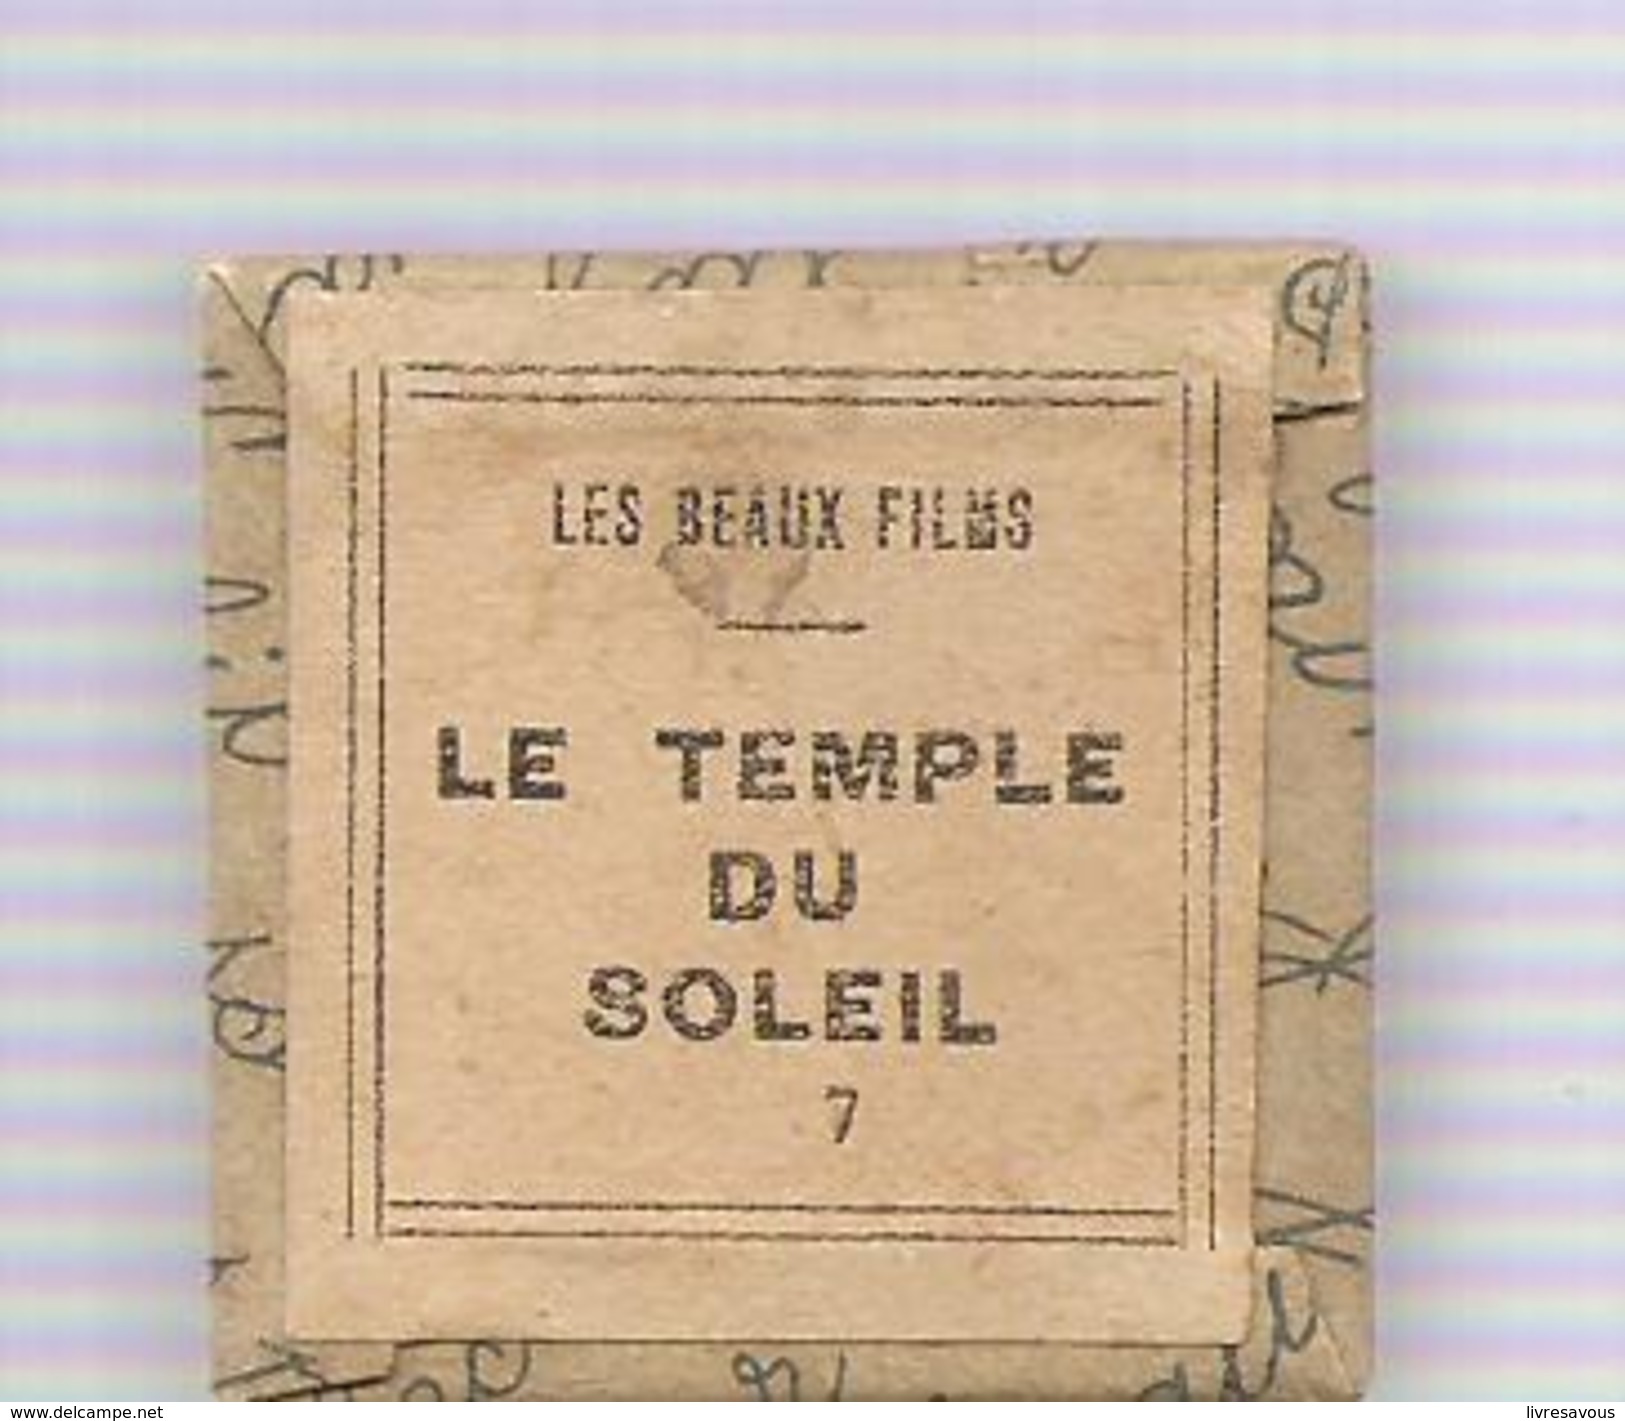 Hergé Film Fixe N°7 Tintin Et Le Temple Du Soleil D'Hergé Collection "Les Beaux Films" Des Années 1965 - 35mm -16mm - 9,5+8+S8mm Film Rolls